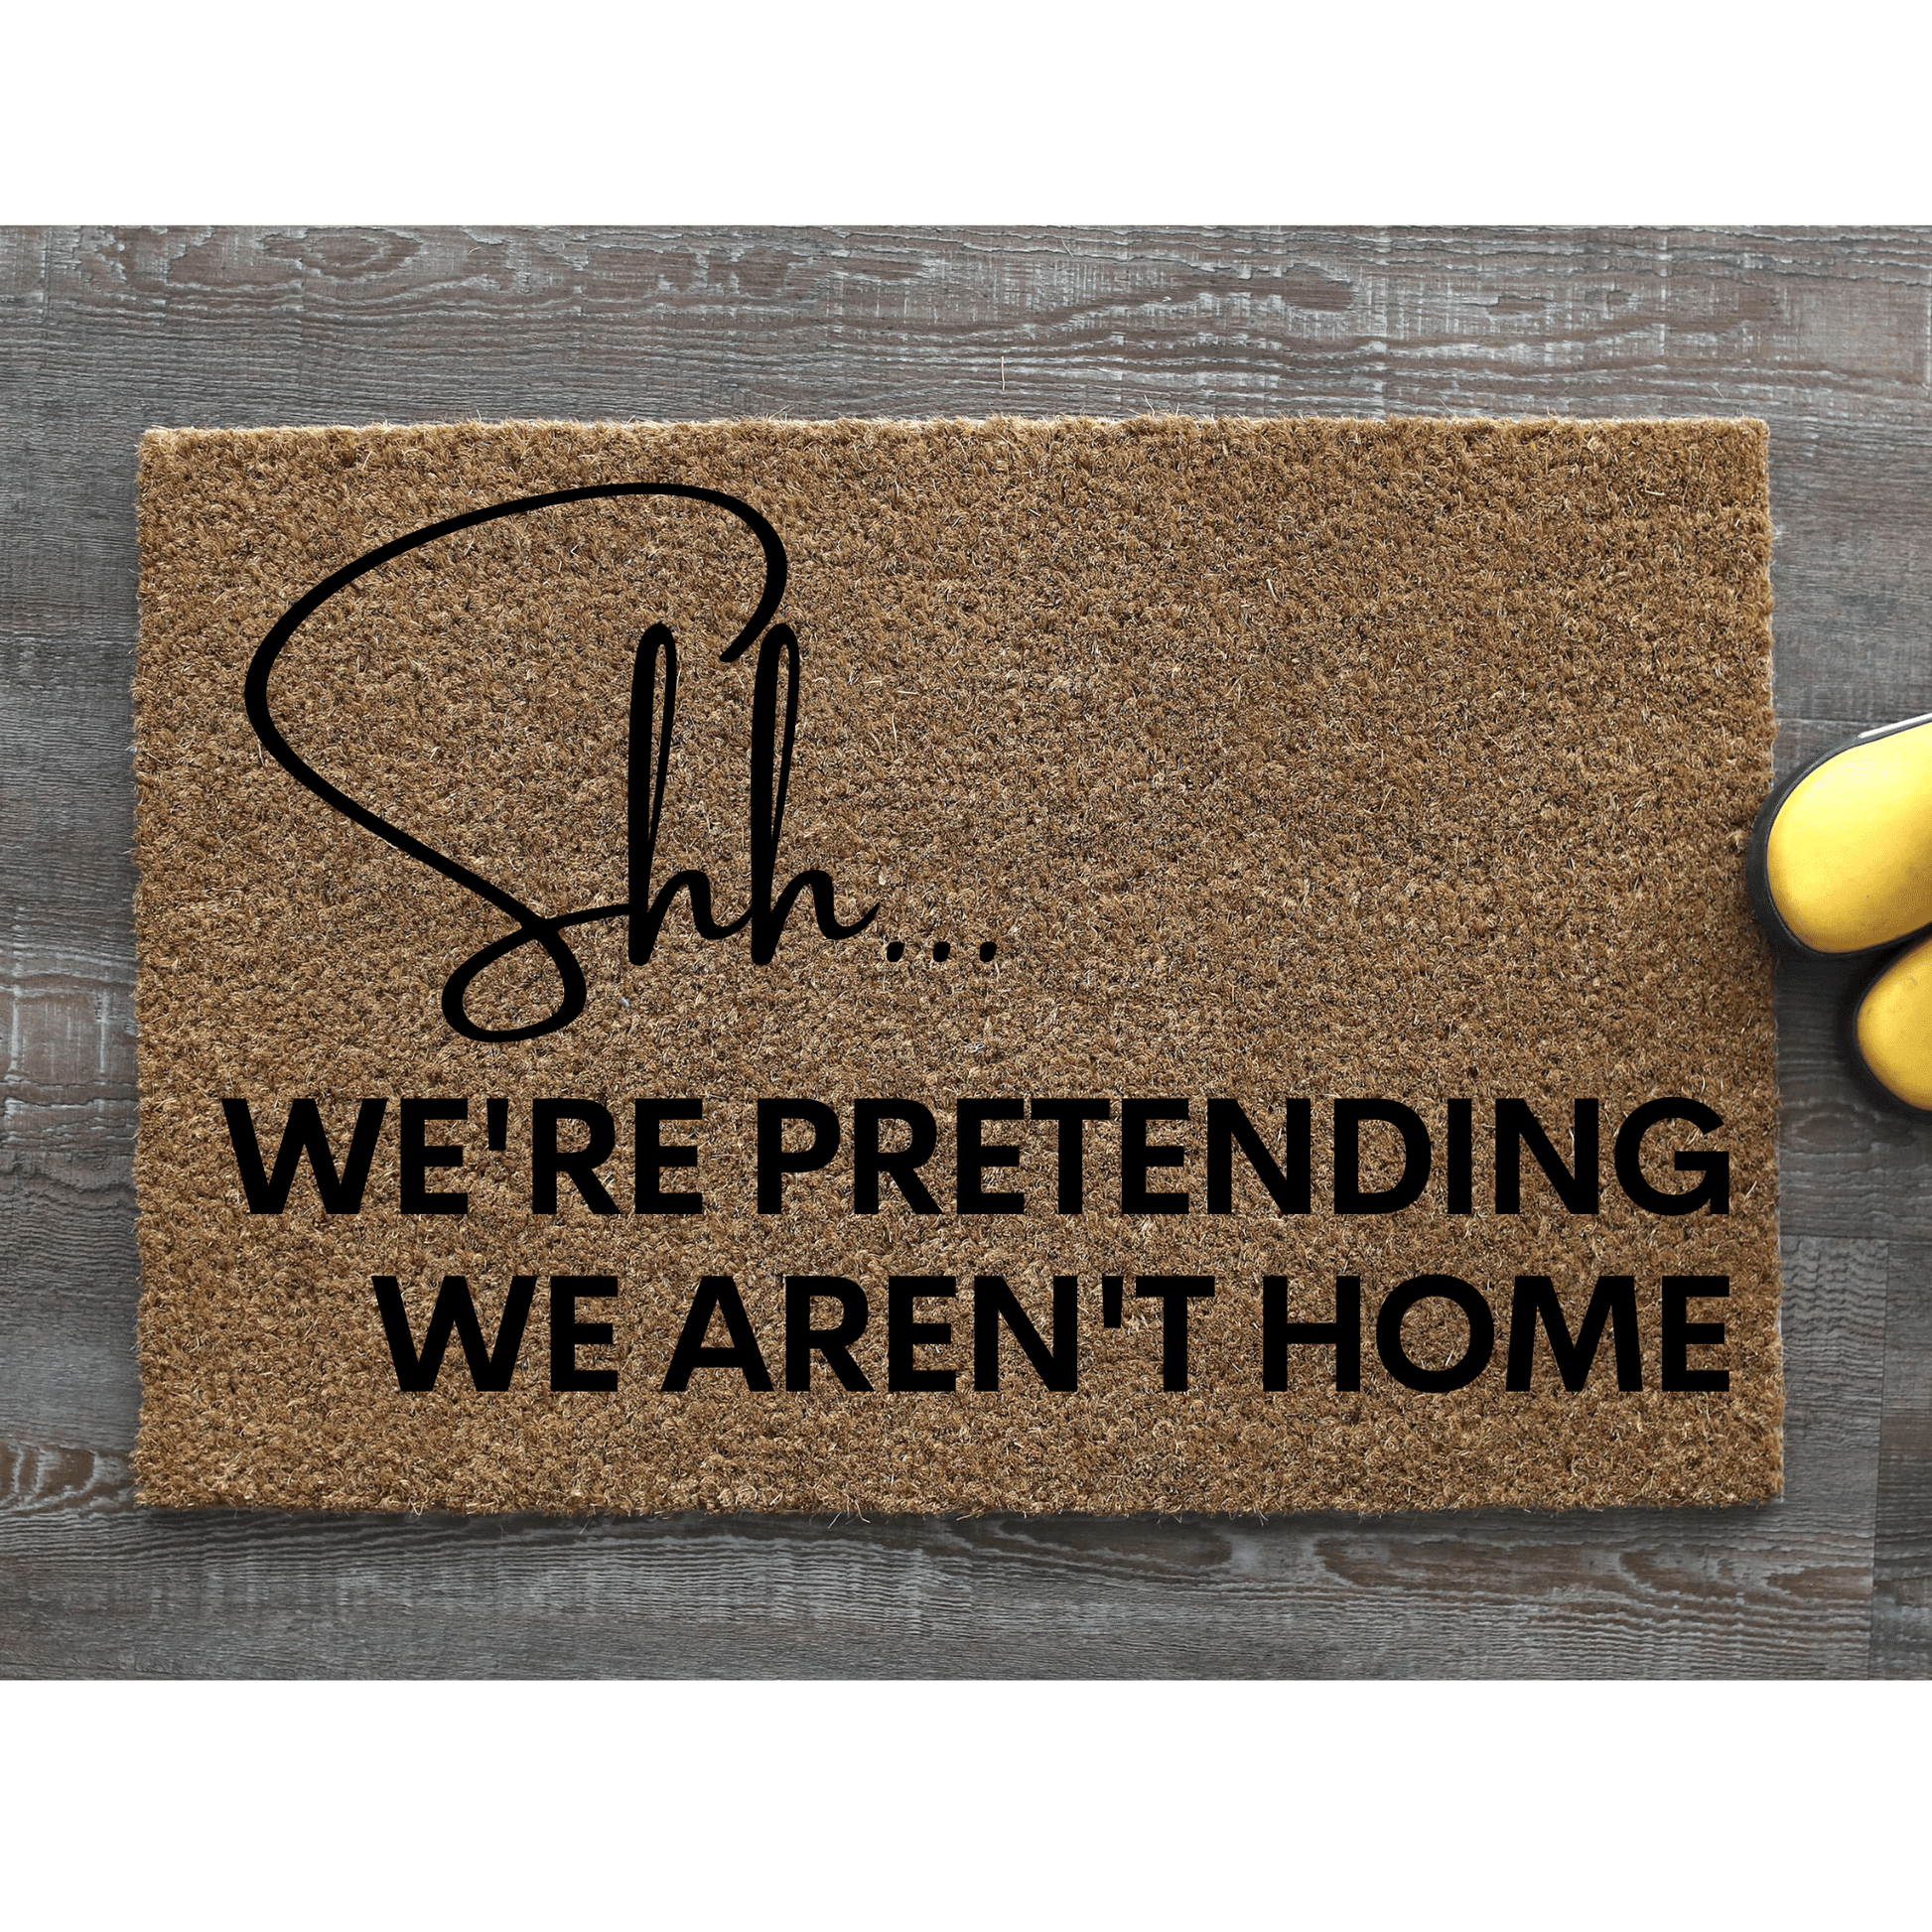 Shh we're pretending we aren't home doormat - Personalised Doormat Australia